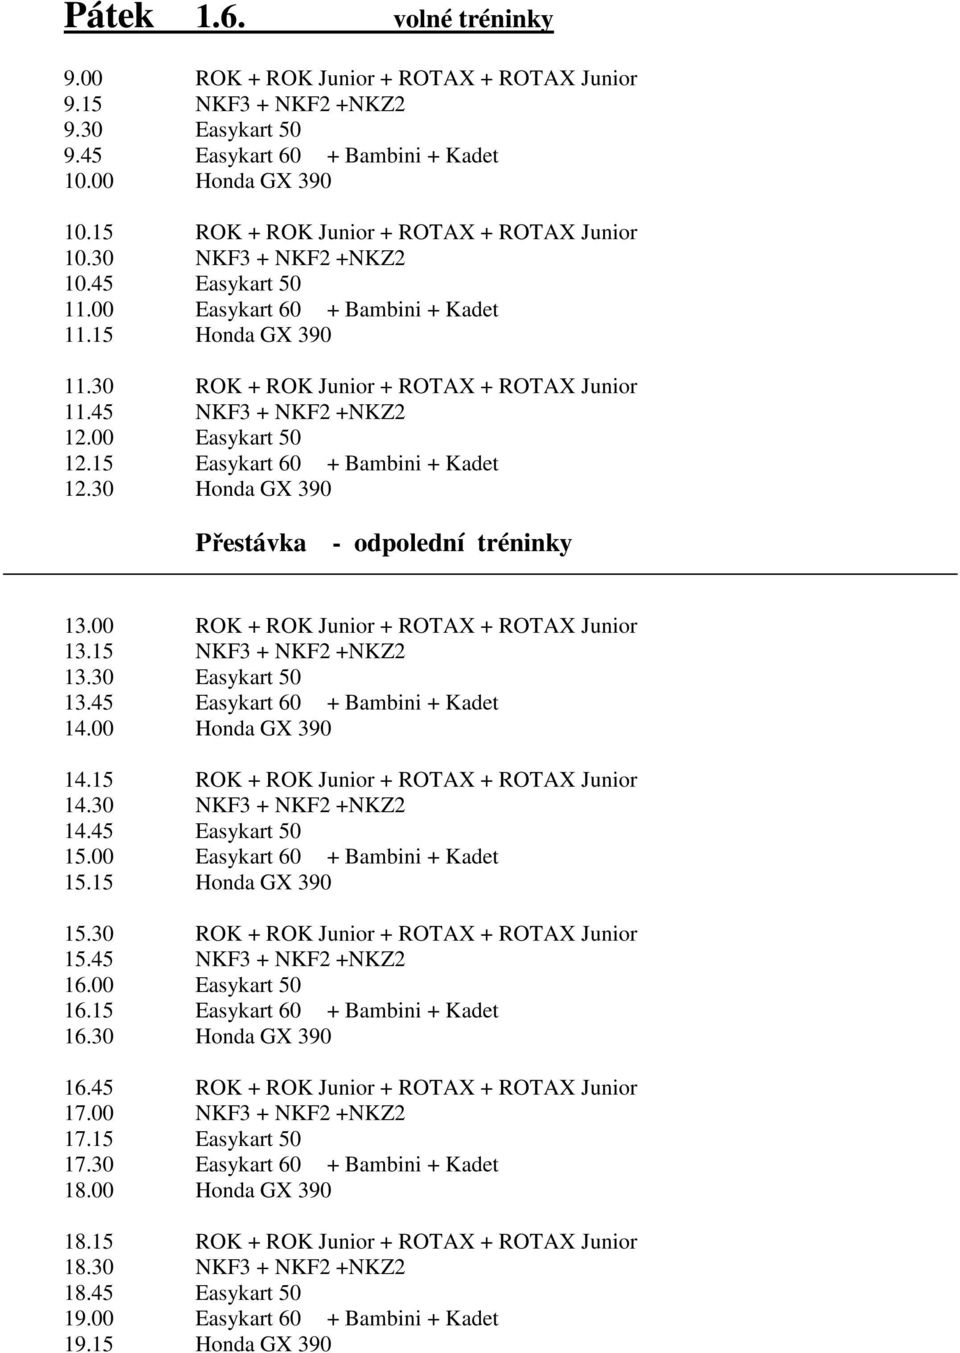 45 NKF3 + NKF2 +NKZ2 12.00 Easykart 50 12.15 Easykart 60 + Bambini + Kadet 12.30 Honda GX 390 Přestávka - odpolední tréninky 13.00 ROK + ROK Junior + ROTAX + ROTAX Junior 13.15 NKF3 + NKF2 +NKZ2 13.